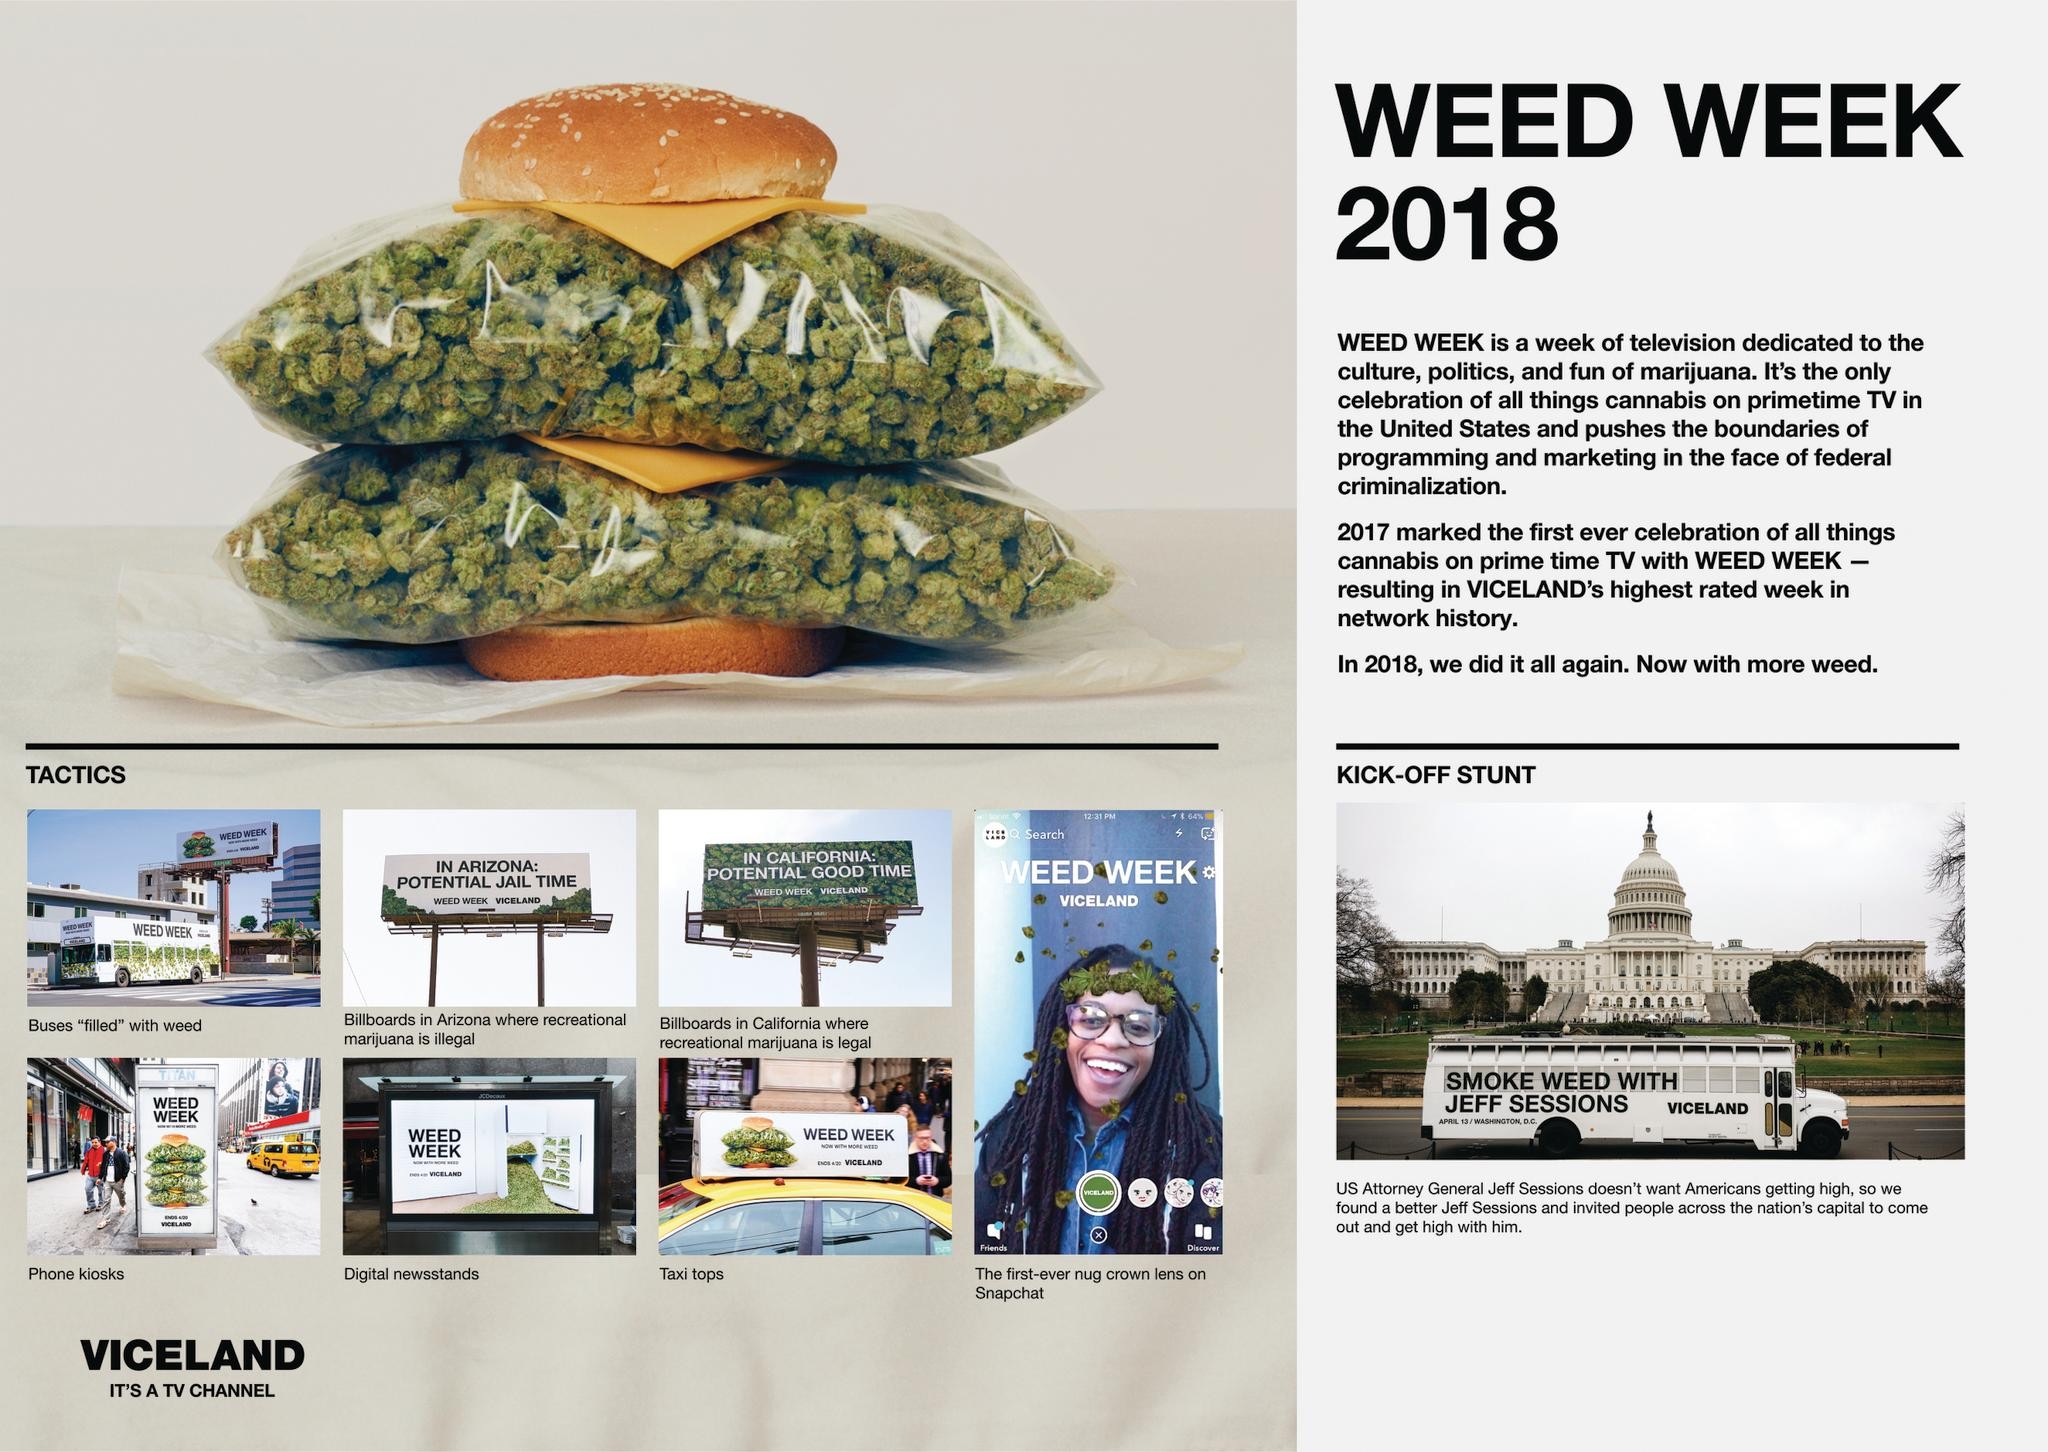 WEED WEEK 2018